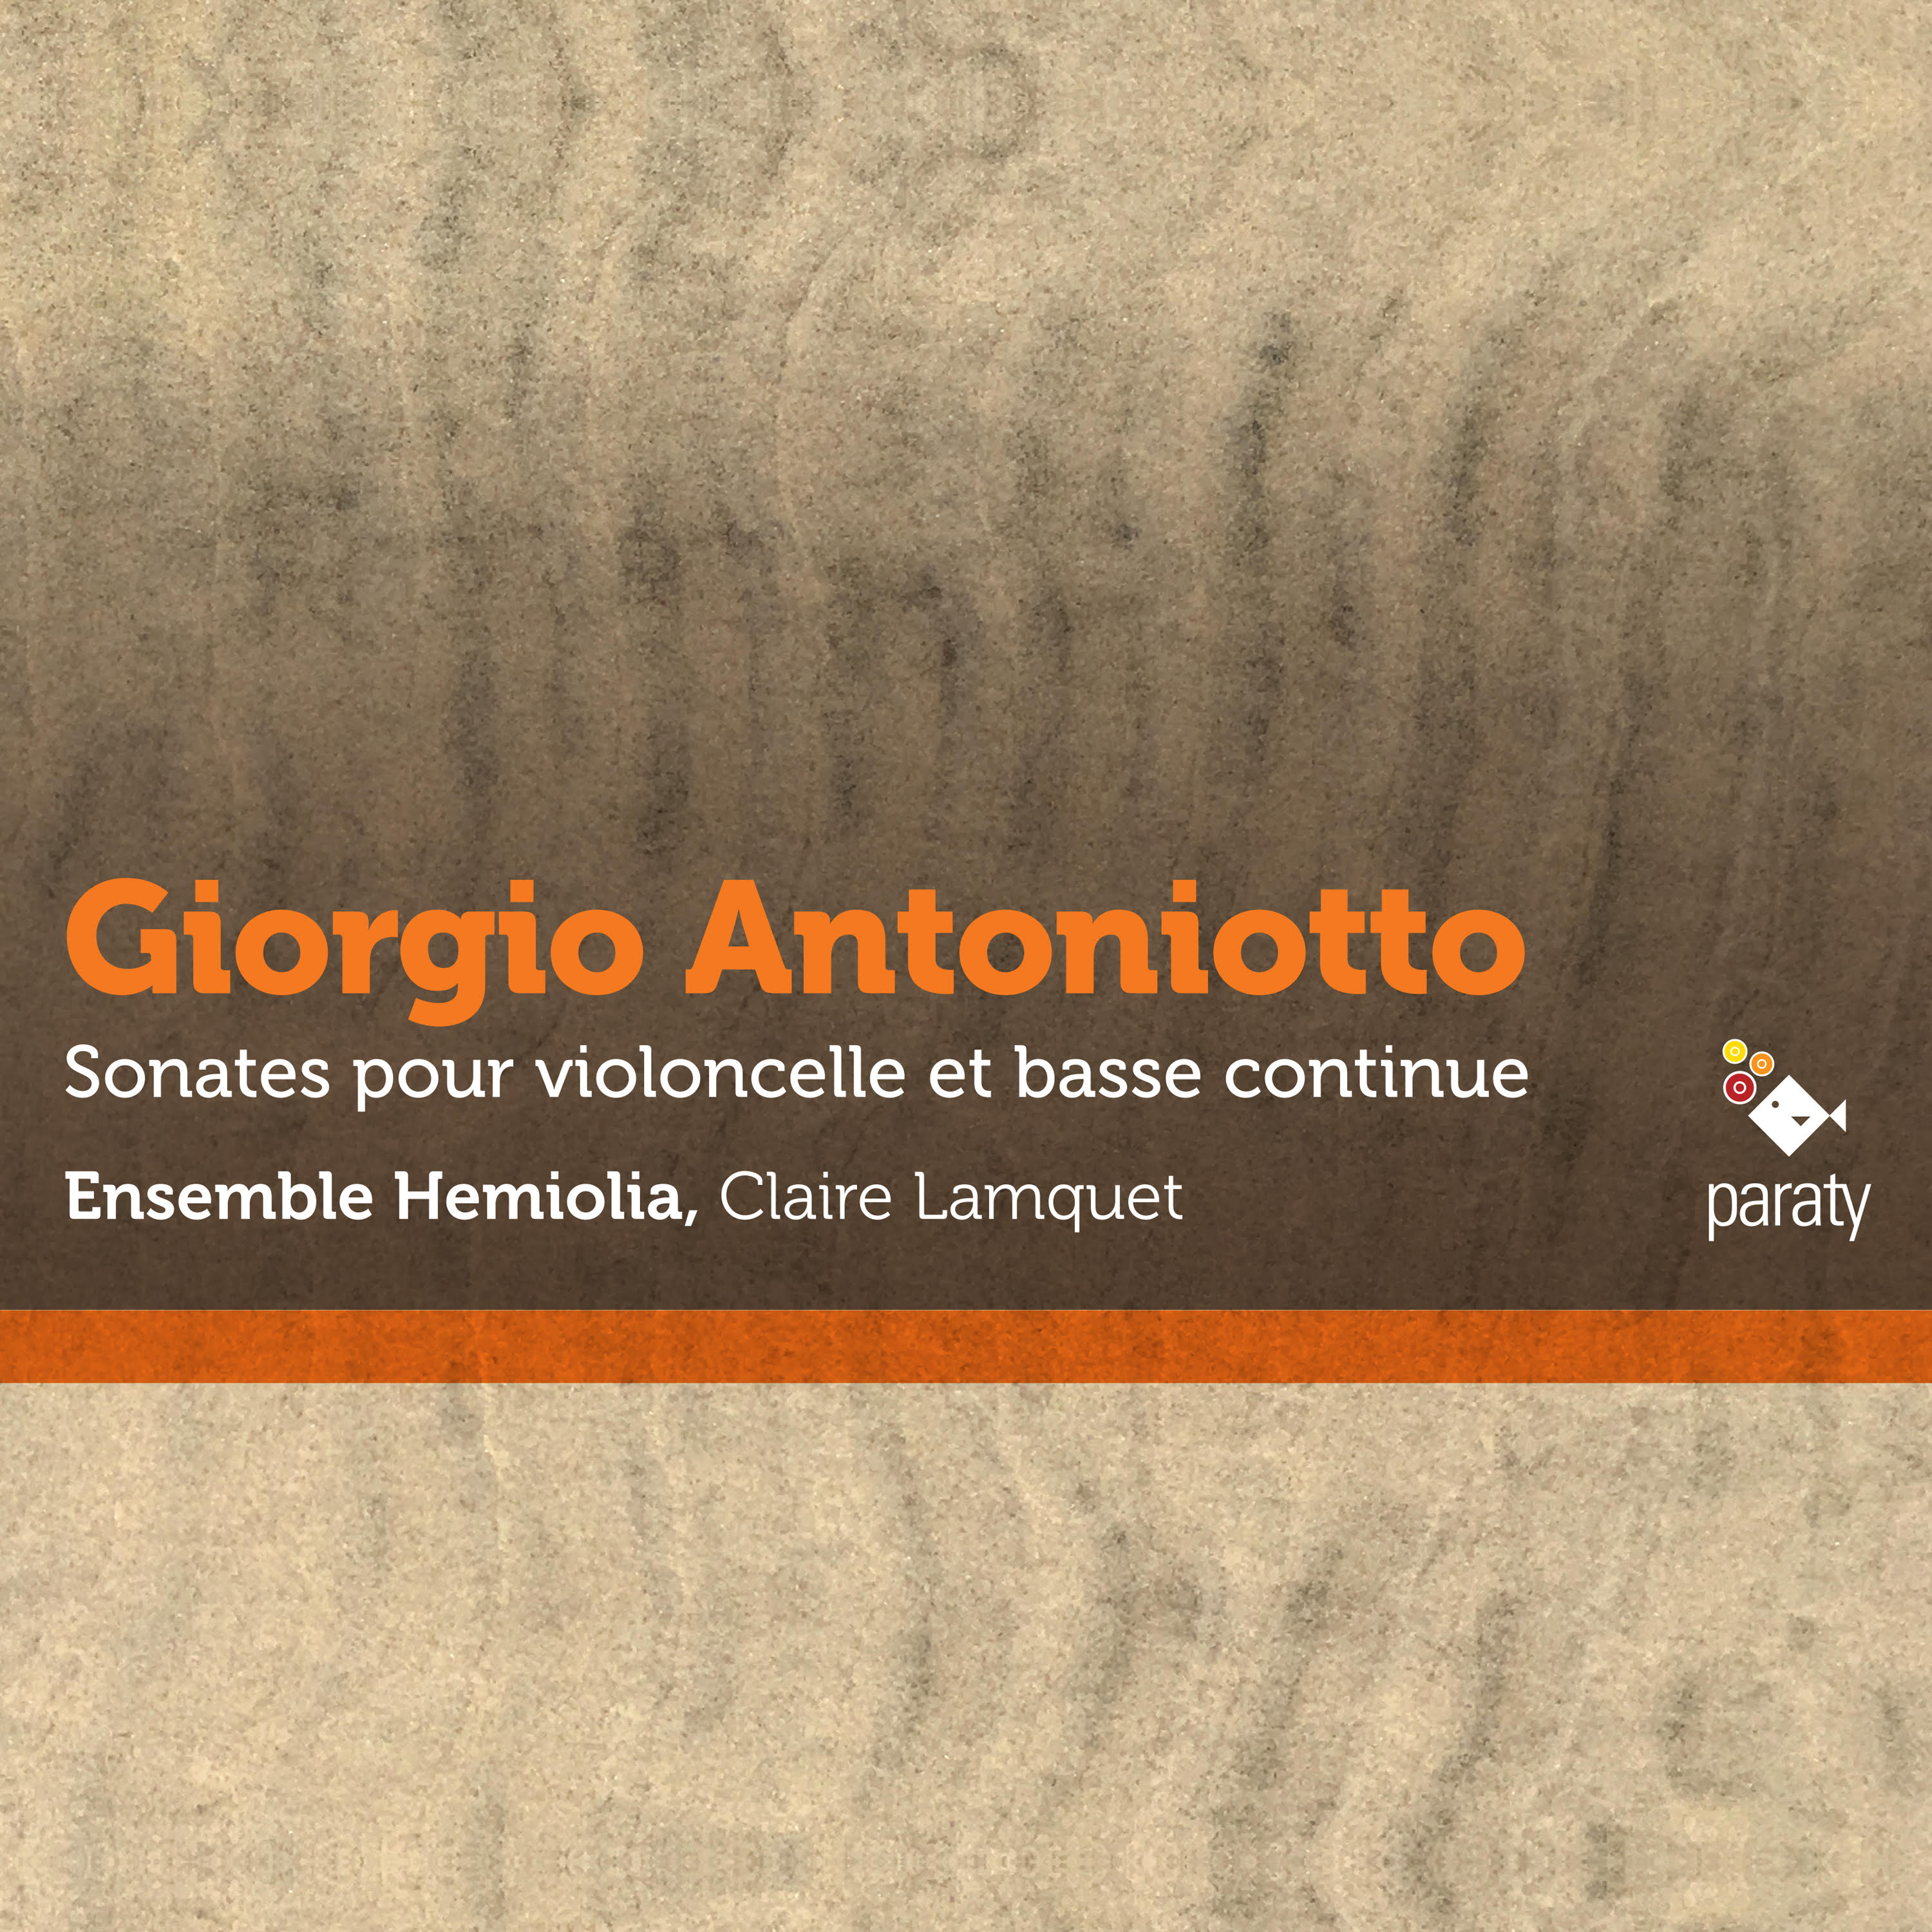 Sonates pour violoncelle et basse continue, Giorgio Antoniotto (Milan 1681 – Calais 1766)